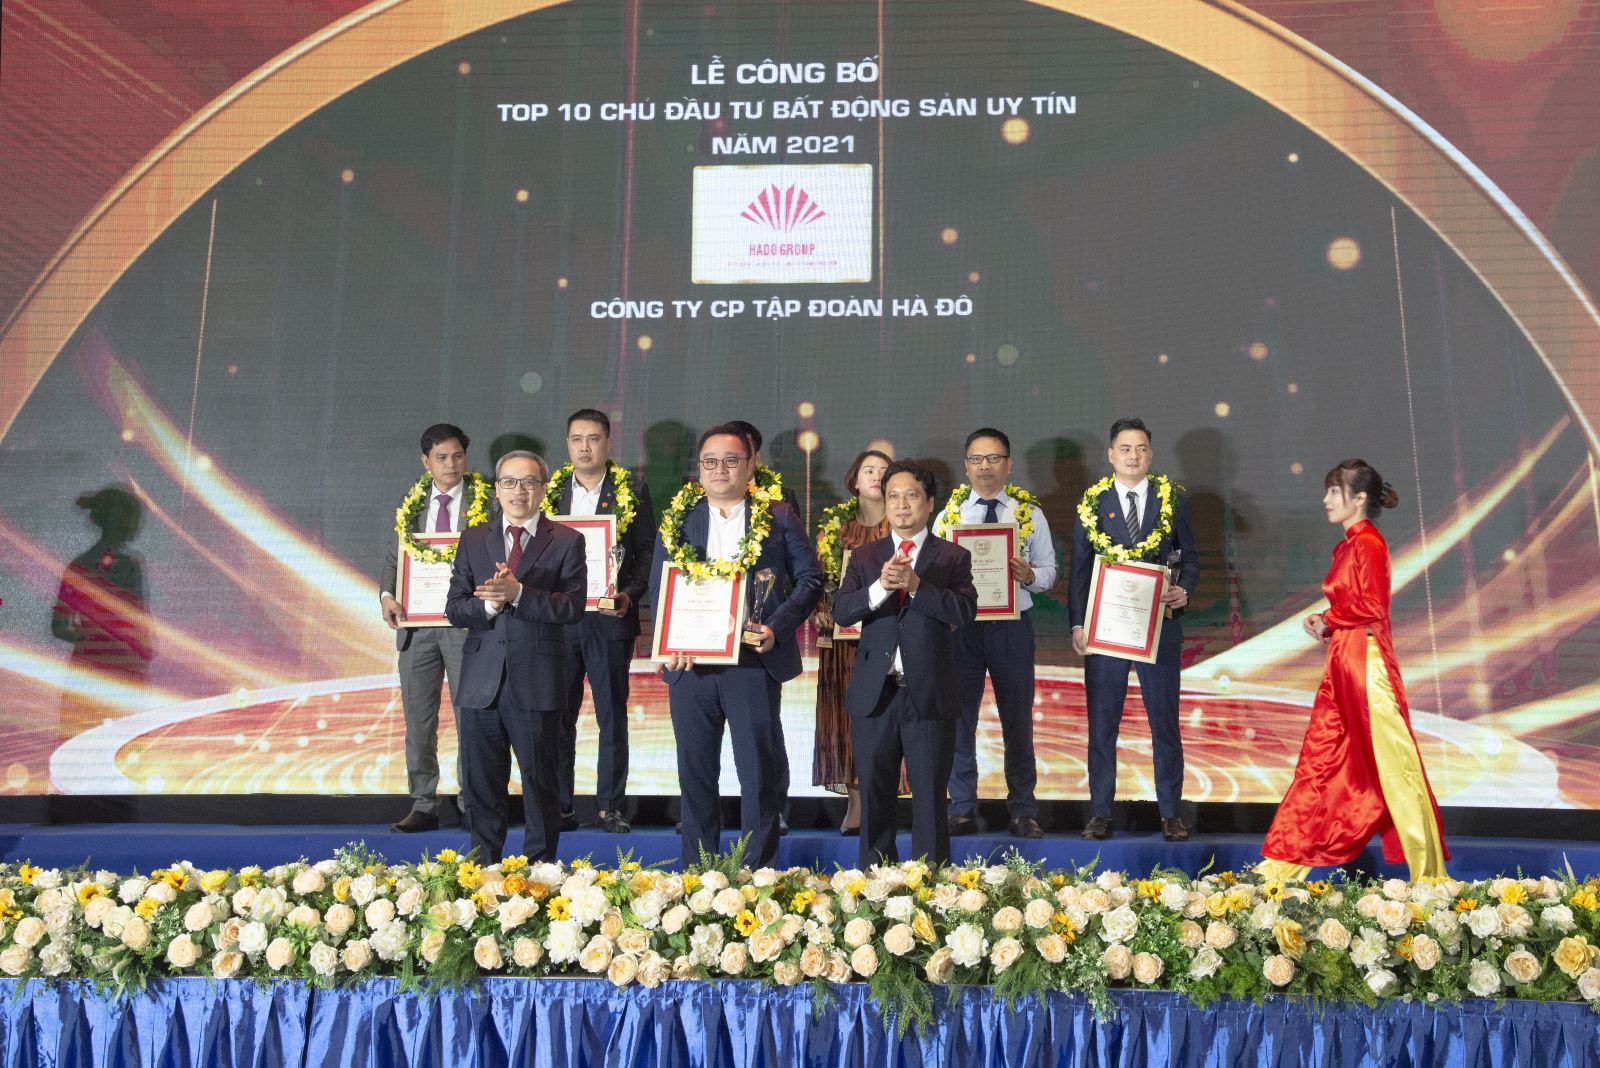 Tập đoàn Hà Đô lần thứ 5 được vinh danh trong Top 10 Chủ đầu tư Bất động sản uy tín Việt Nam